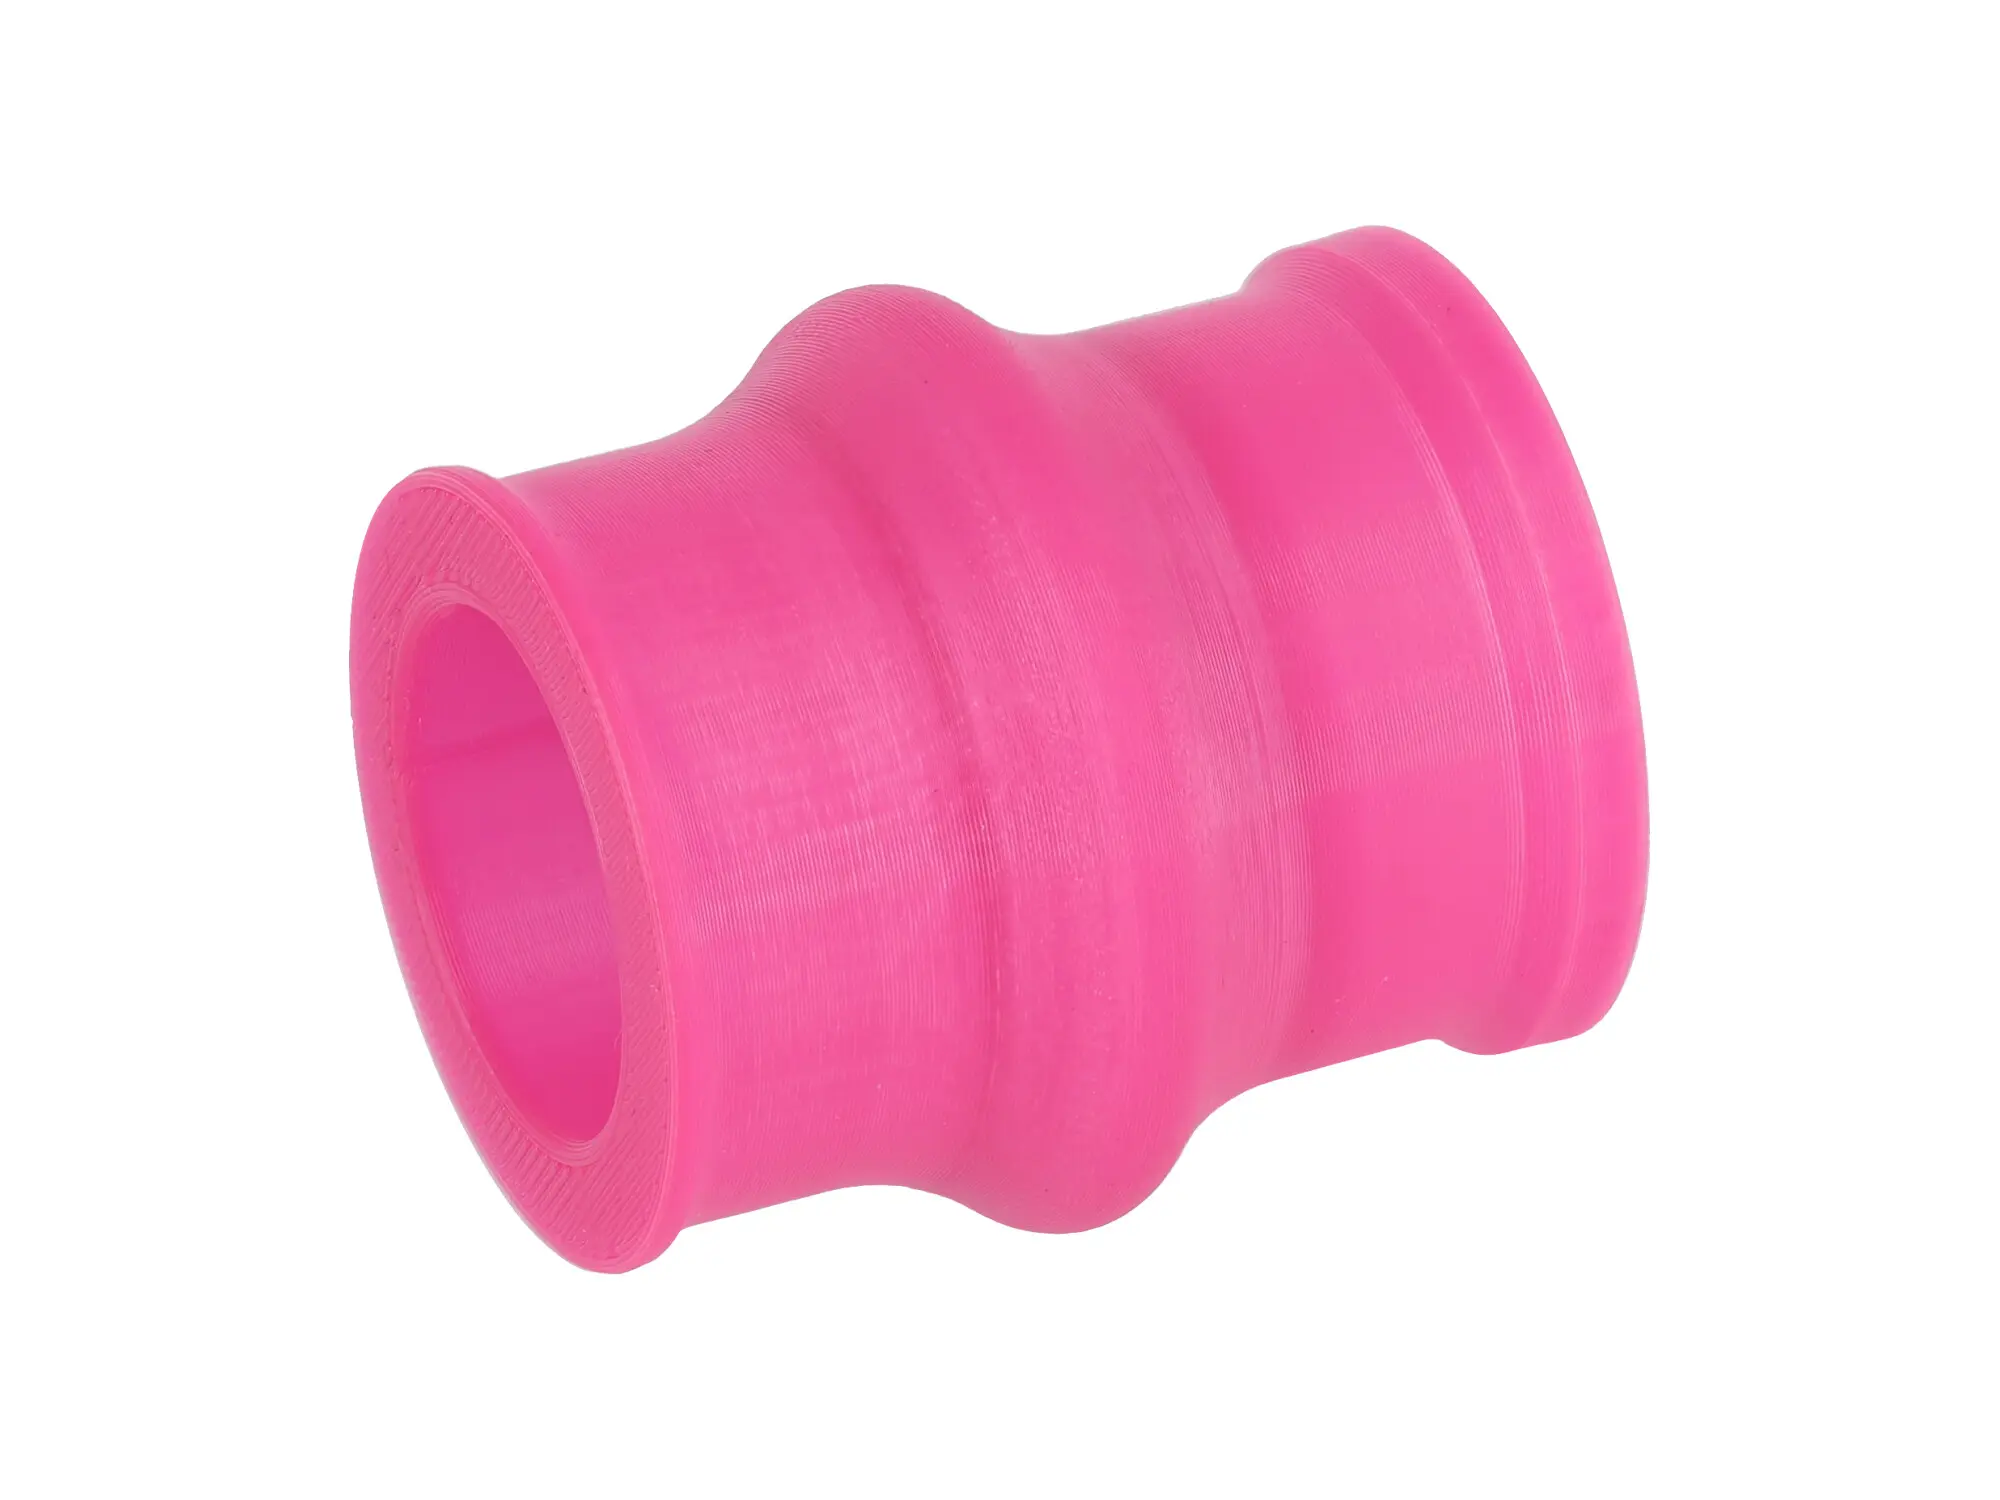 Ansaugmuffe Pink, 3D-Druck, für Gehäusemittelteil Tuning auf Vergaser - für S51, S50, S70, S53, S83, Art.-Nr.: 10072083 - Bild 1